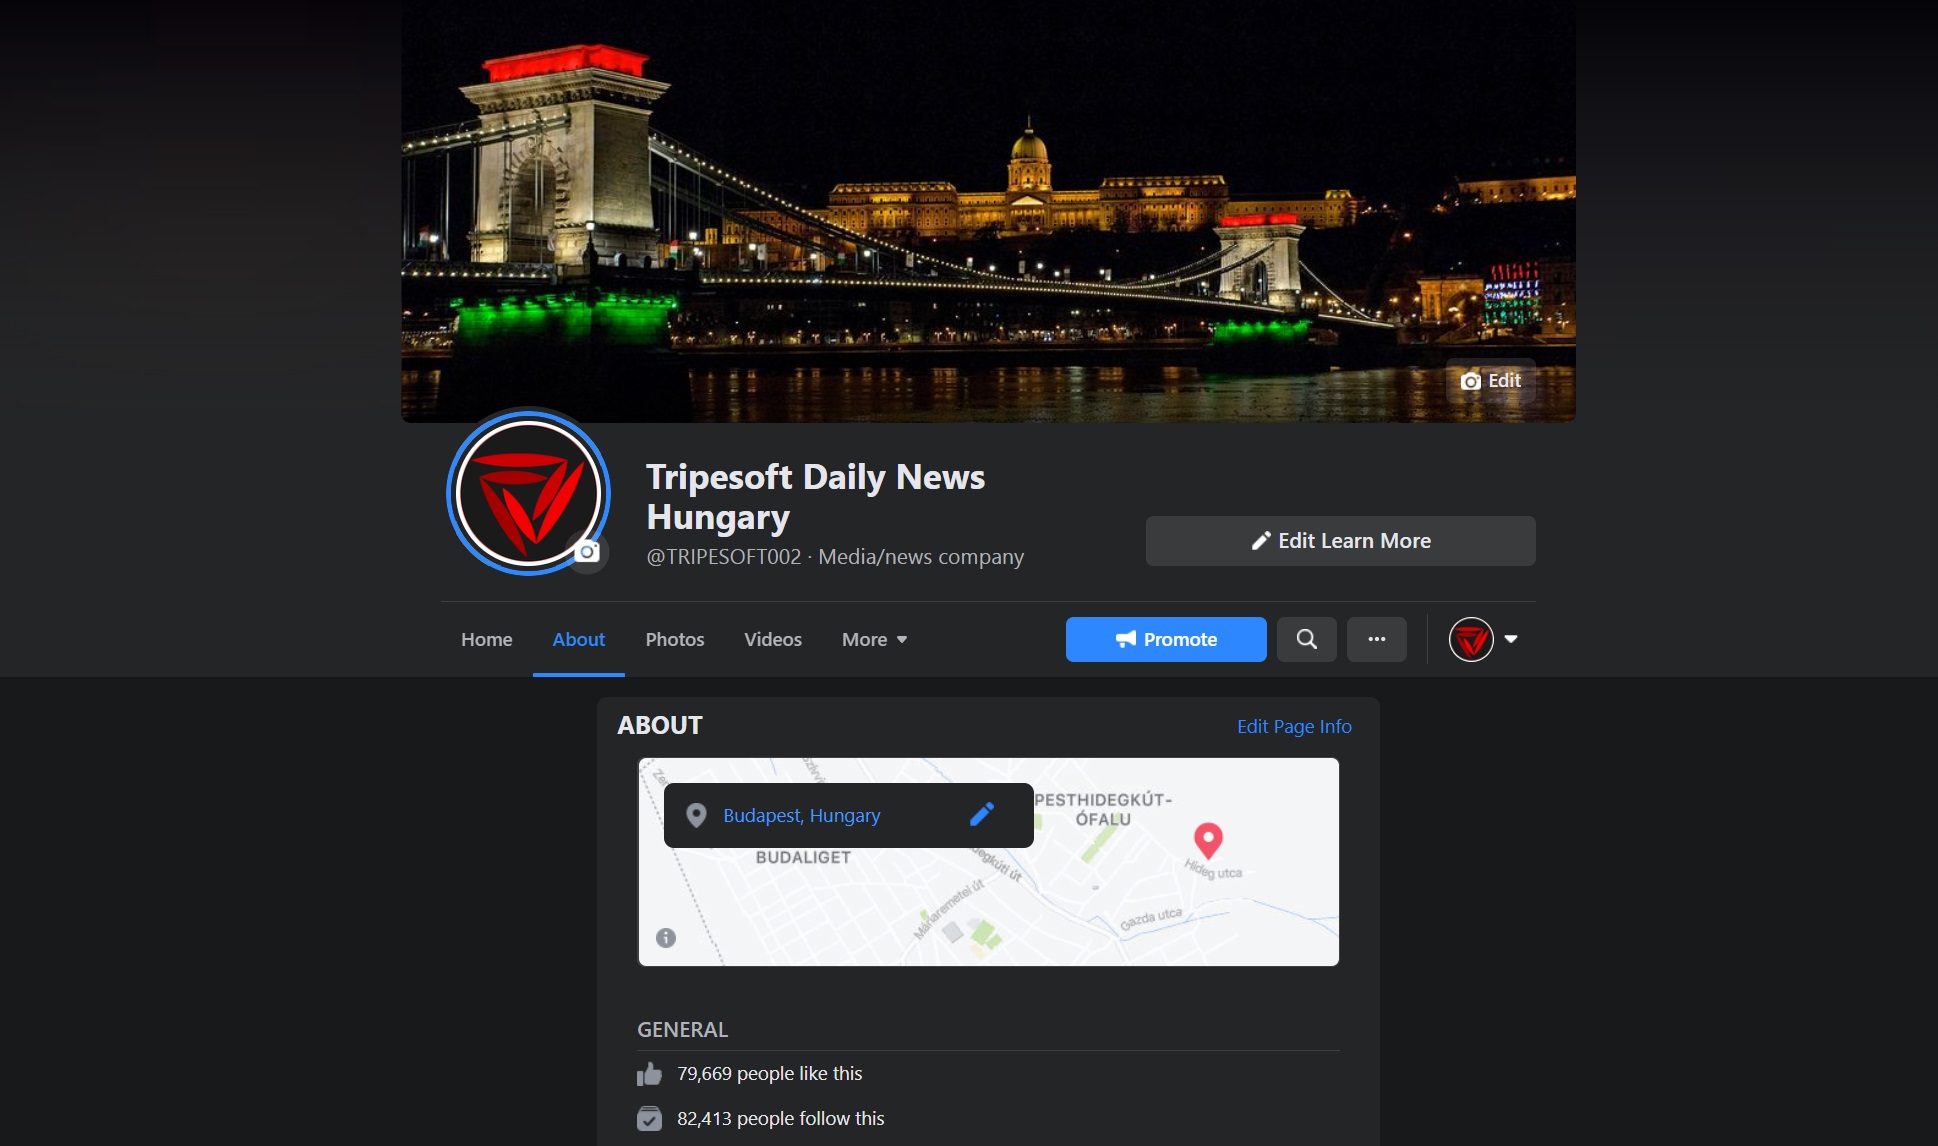 每日新闻匈牙利脸书页面被盗